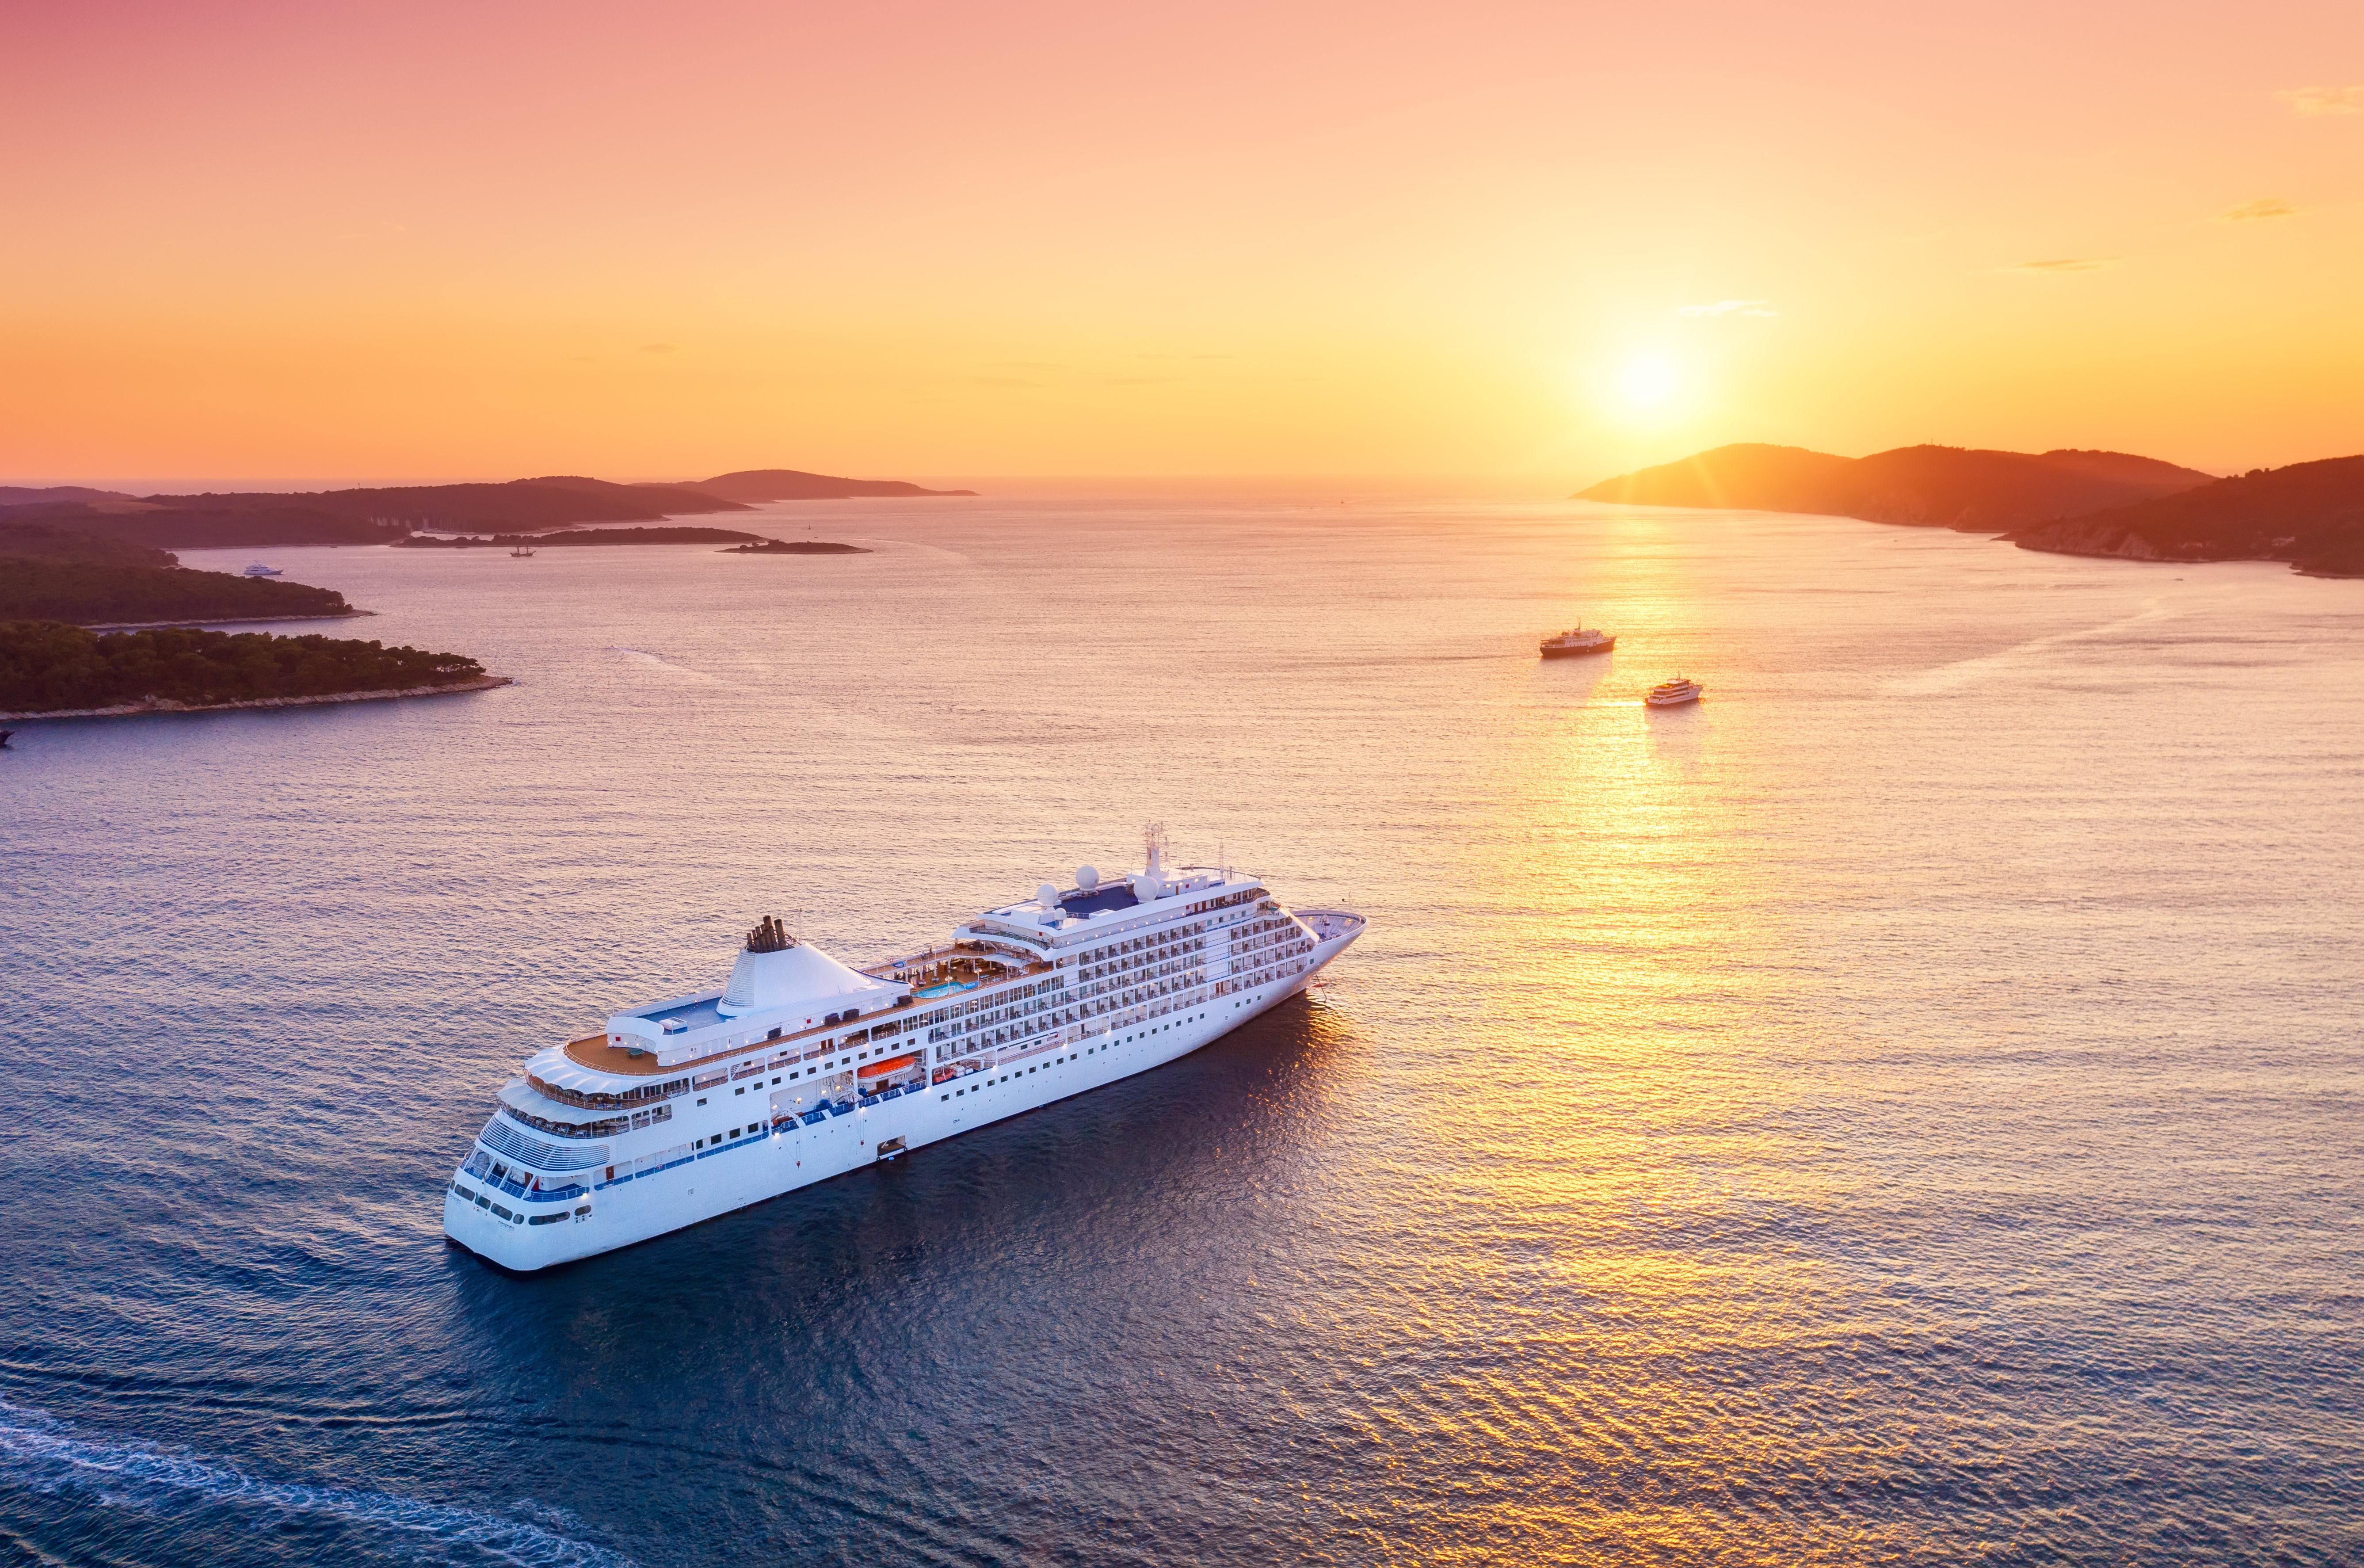 Cruise ship moving toward sunset